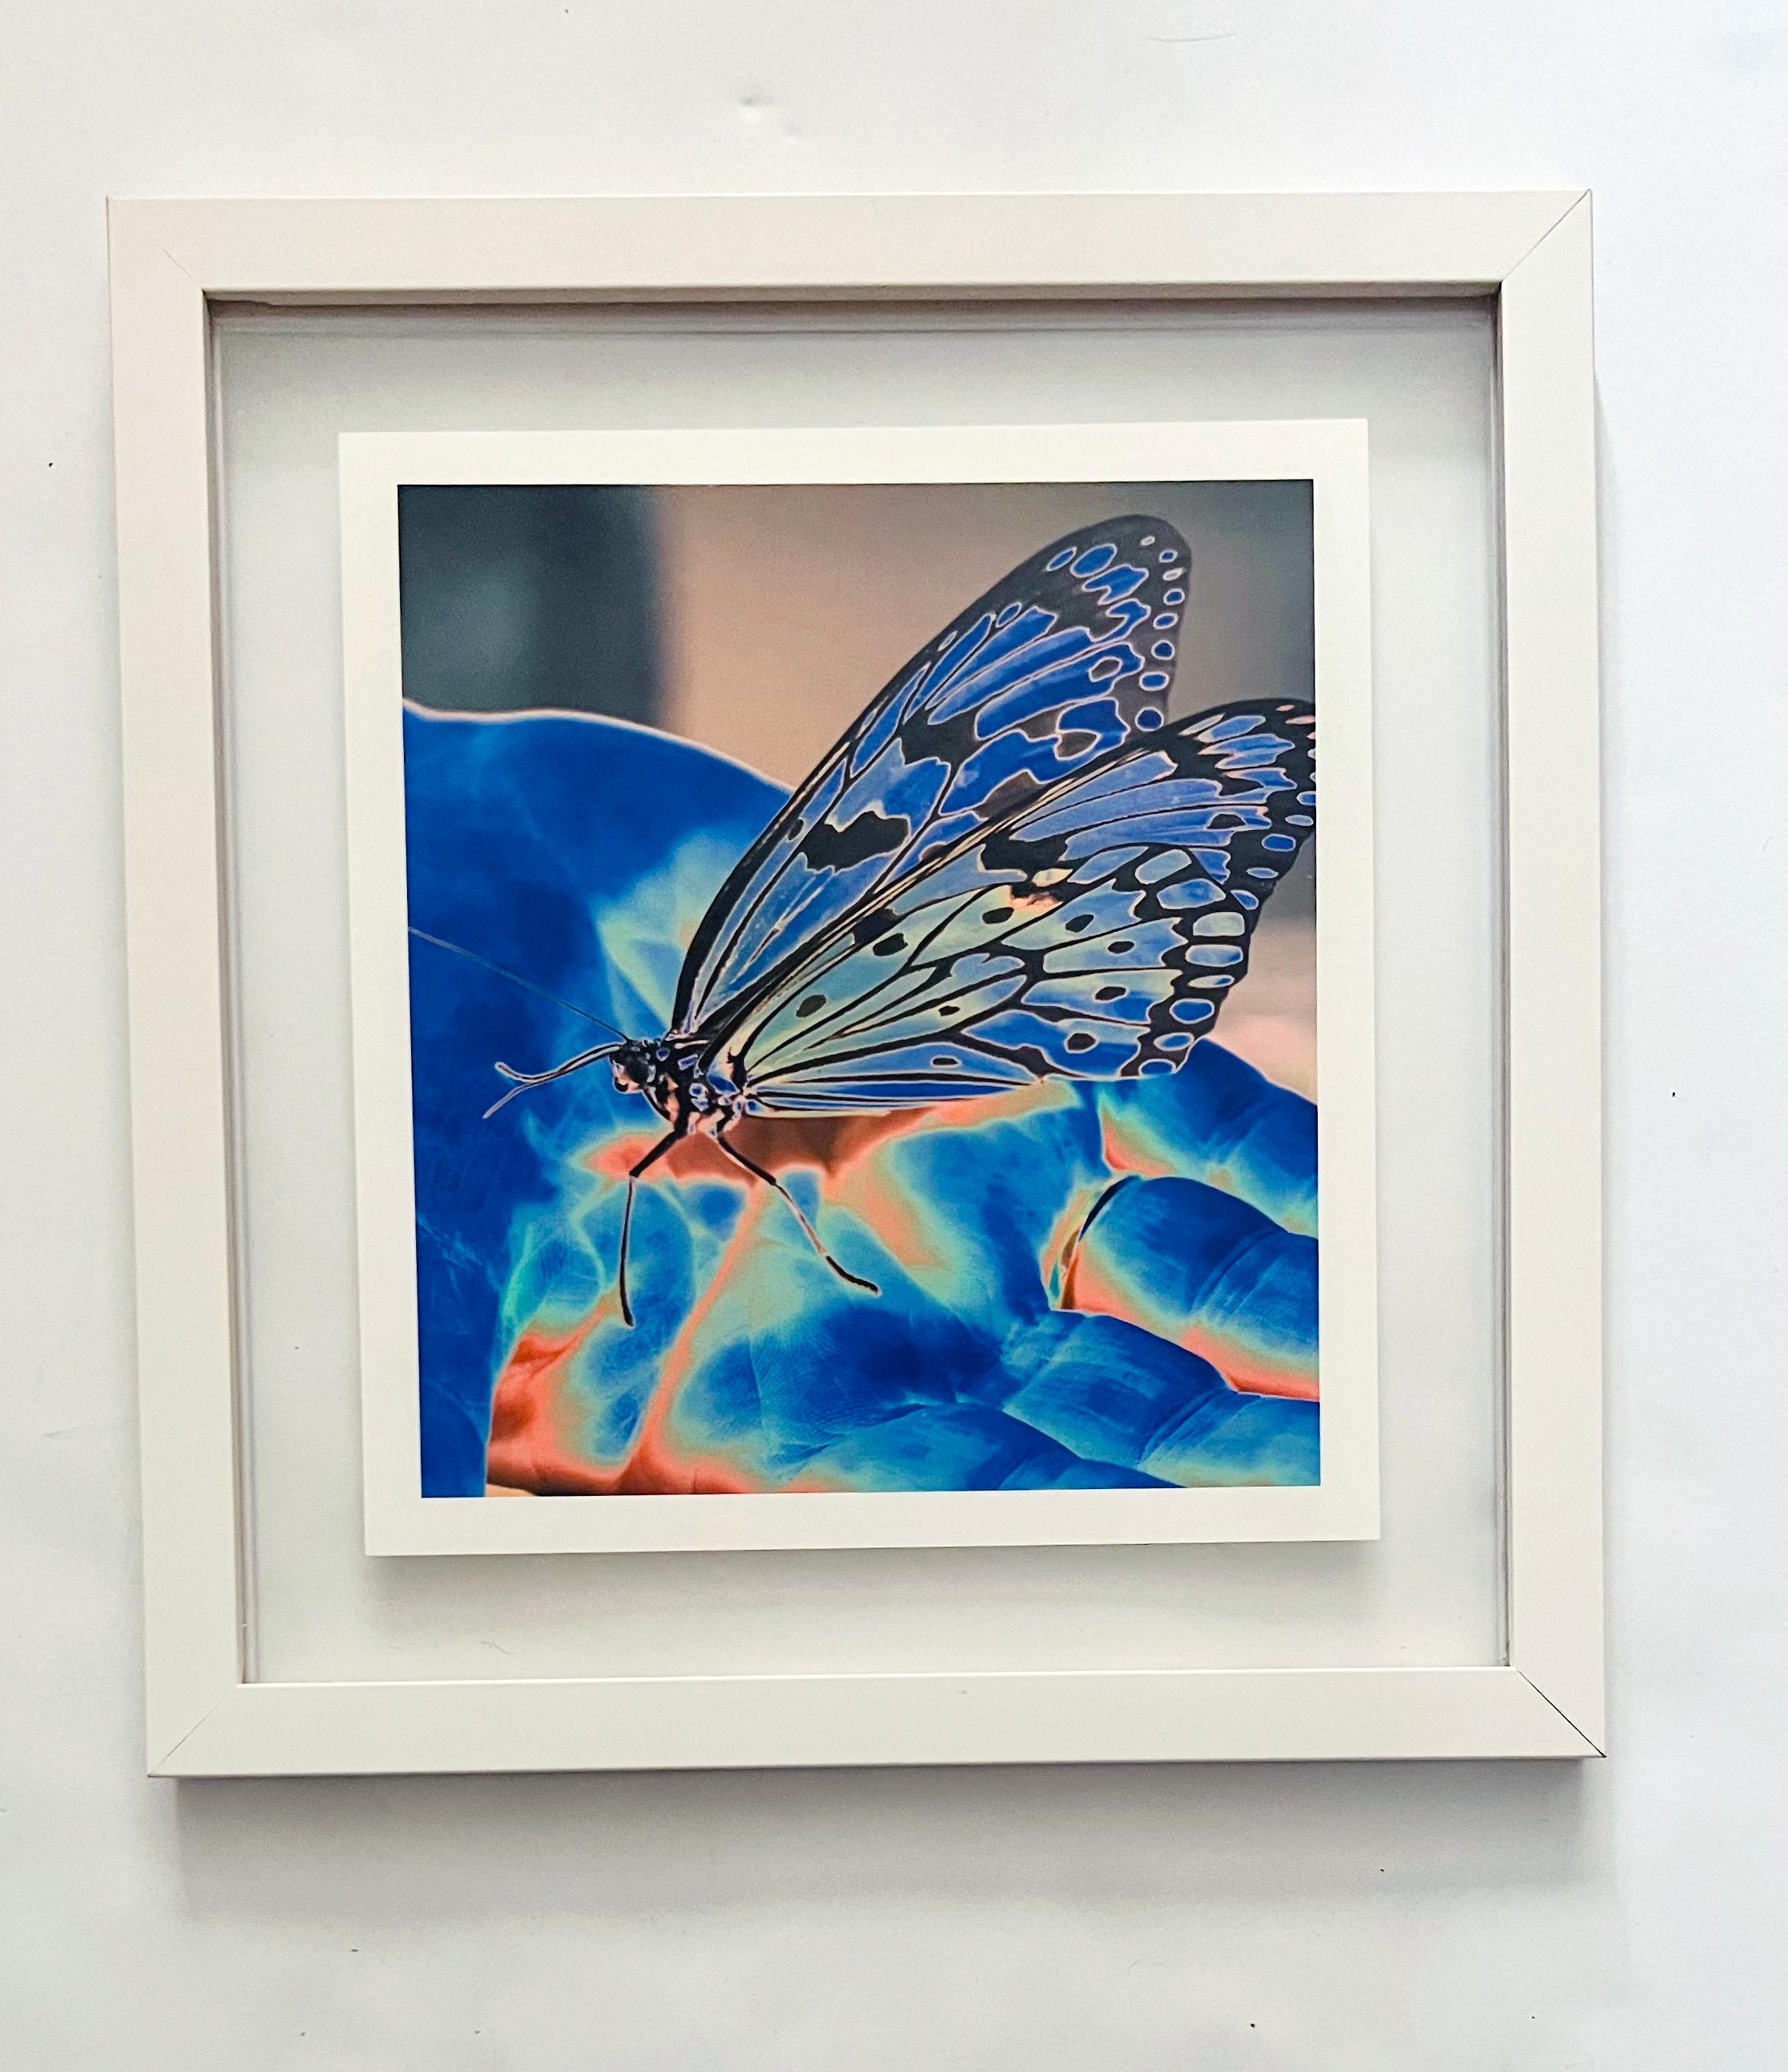 Butterfly Blue, une impression pigmentaire contemporaine sur papier japonais 